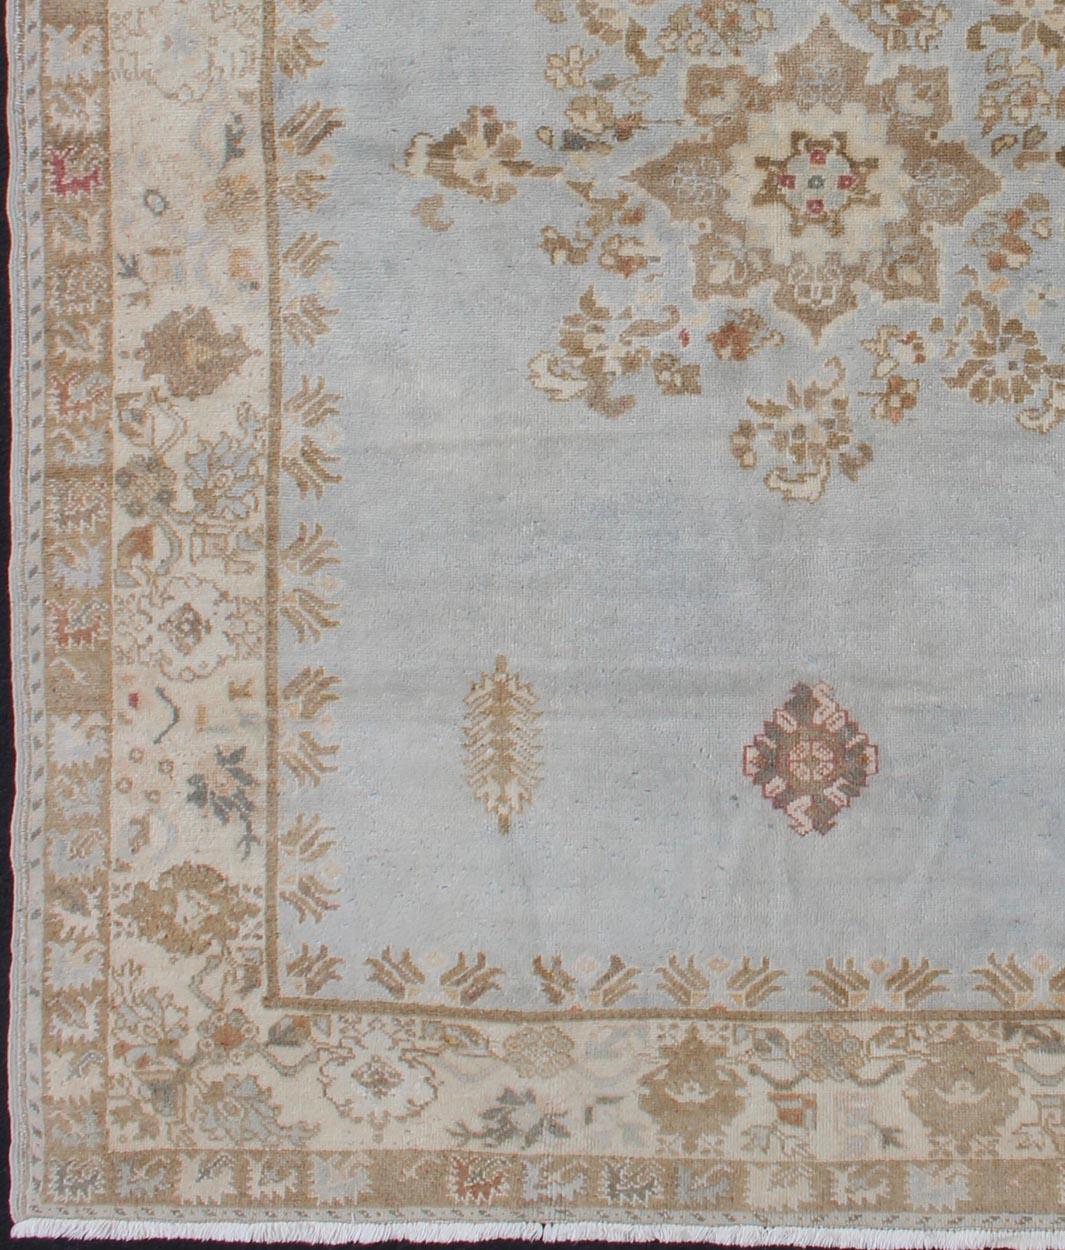 Eleganter marokkanischer Vintage-Teppich in Blassblau, Taupe und Hellbraun
Marokkanischer Teppich mit zentralem Medaillonmuster, Keivan Woven Arts /rug #13-0605 , Herkunftsland / Typ: Marokko / Stammesmuster, um 1960

Maße: 5'8 x 8'3

Dieser